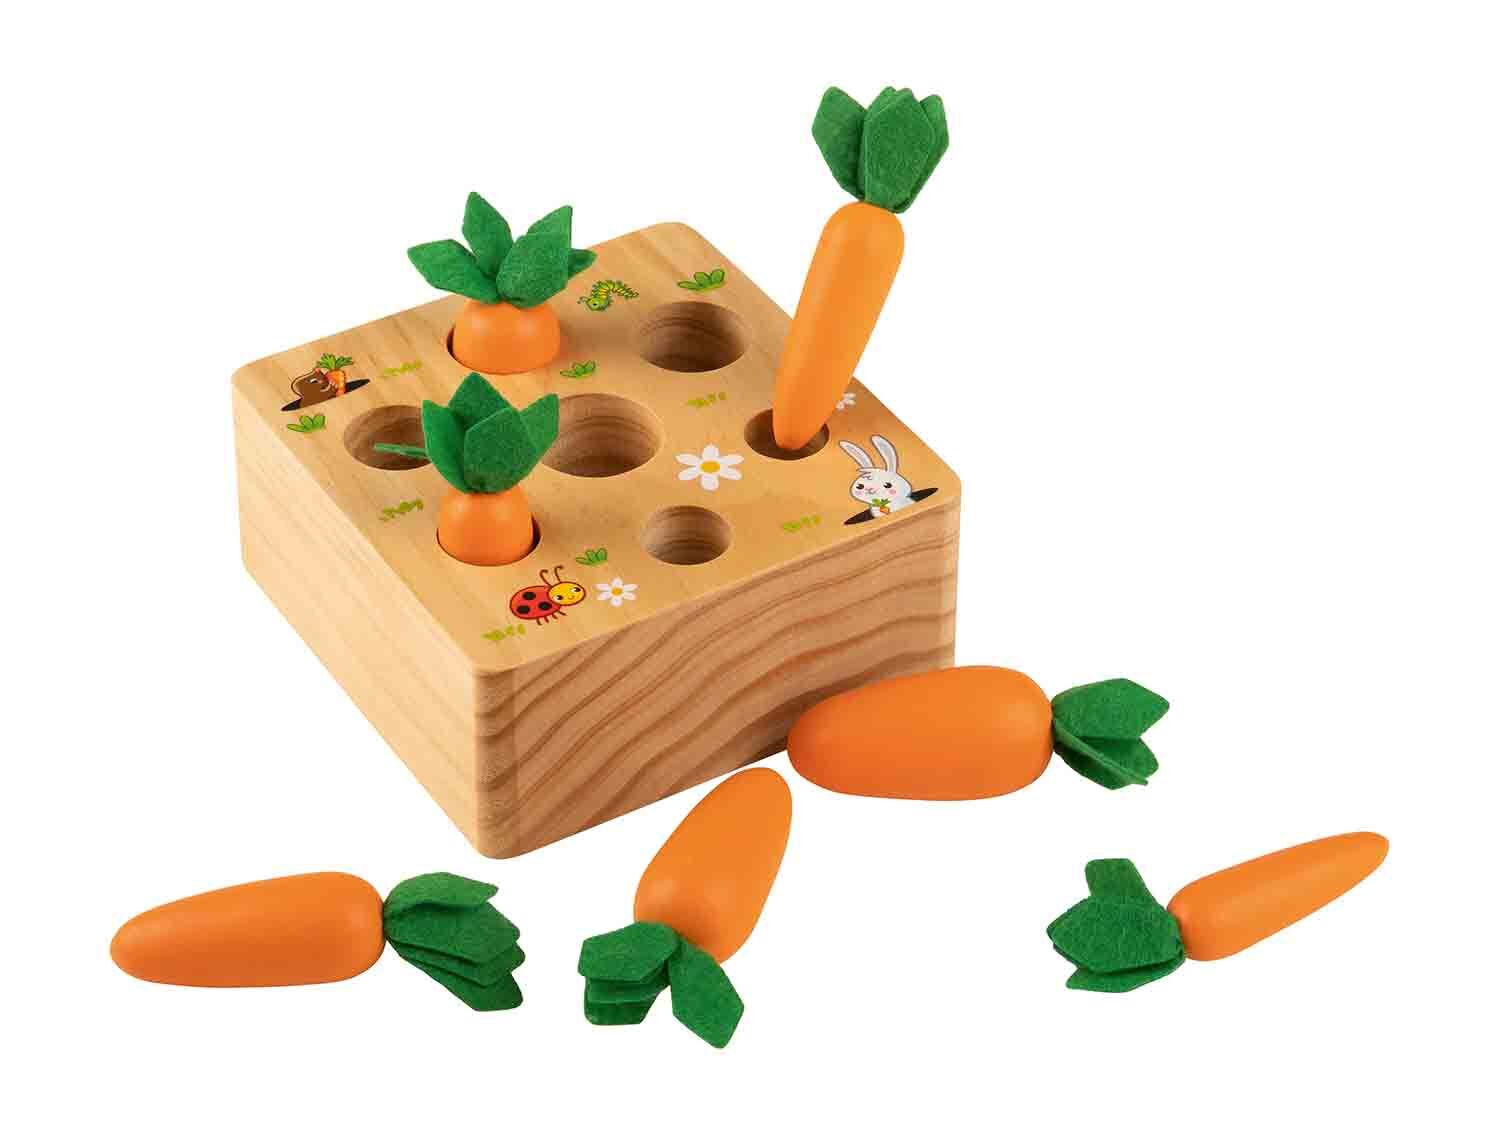 Zanahorias encajables